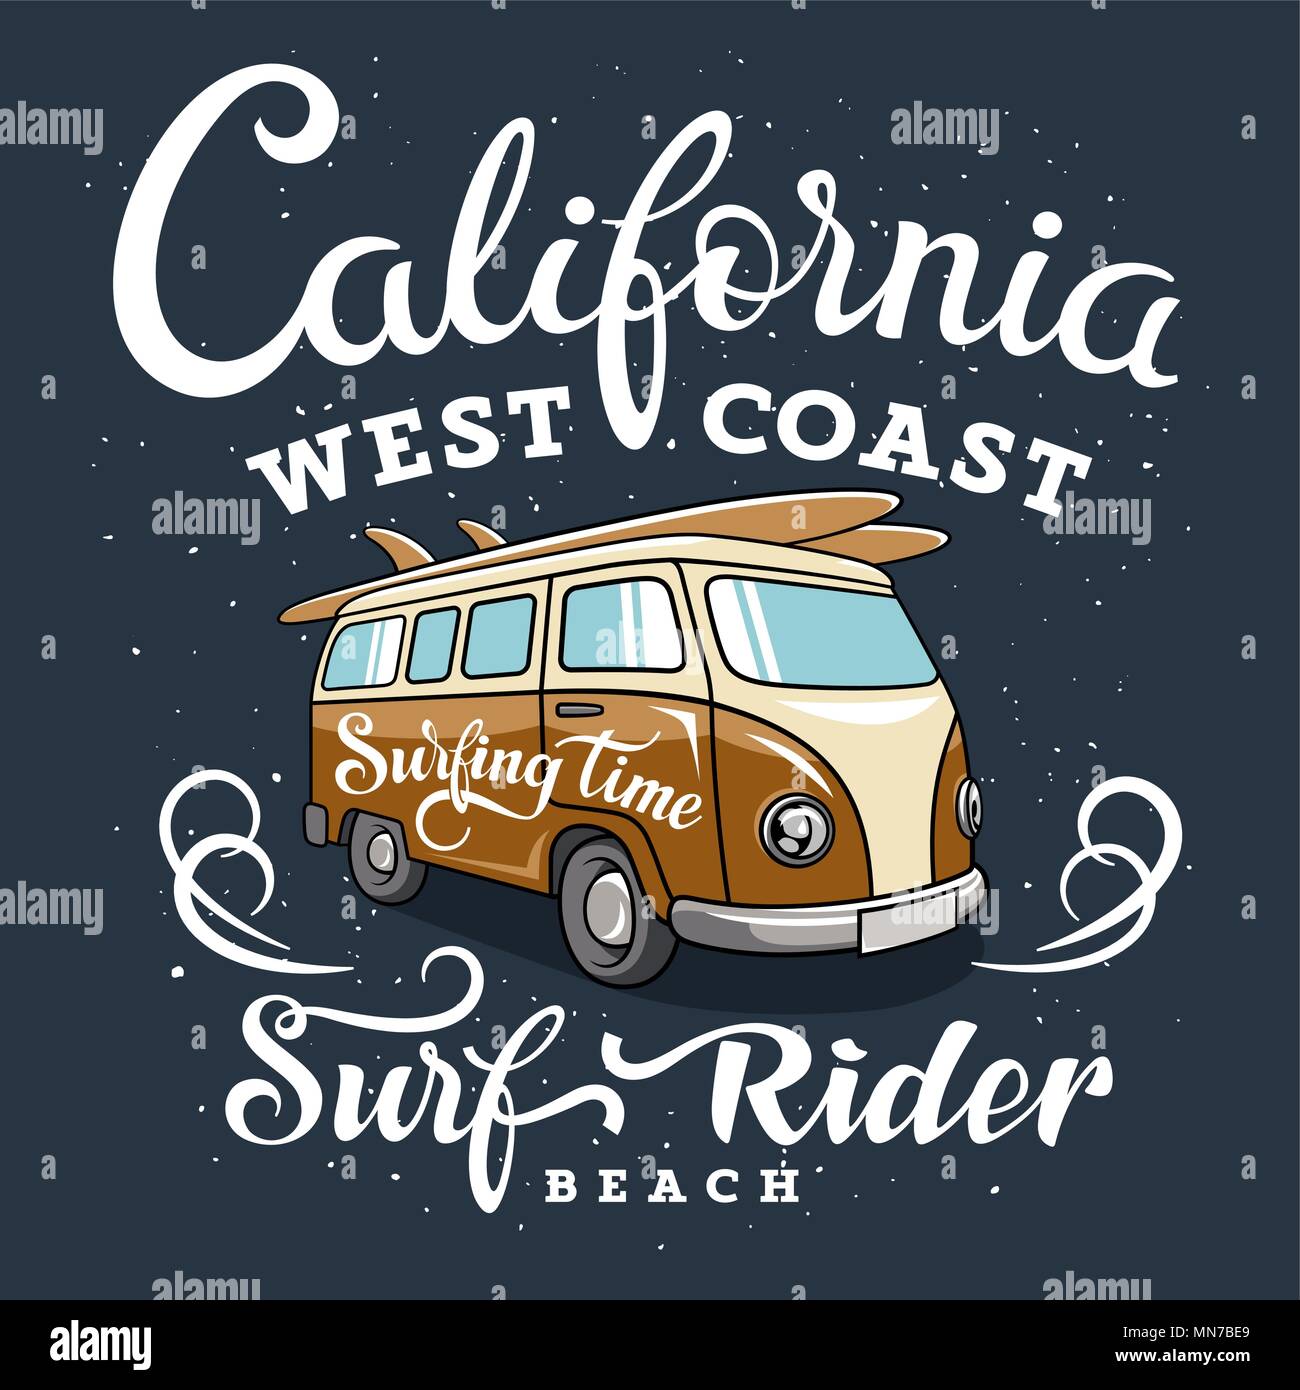 Illustrazione di surf con un furgone hippie. California West Coast. Surfrider beach. T-shirt abbigliamento stampa di grafica. Grafica originale Tee Illustrazione Vettoriale